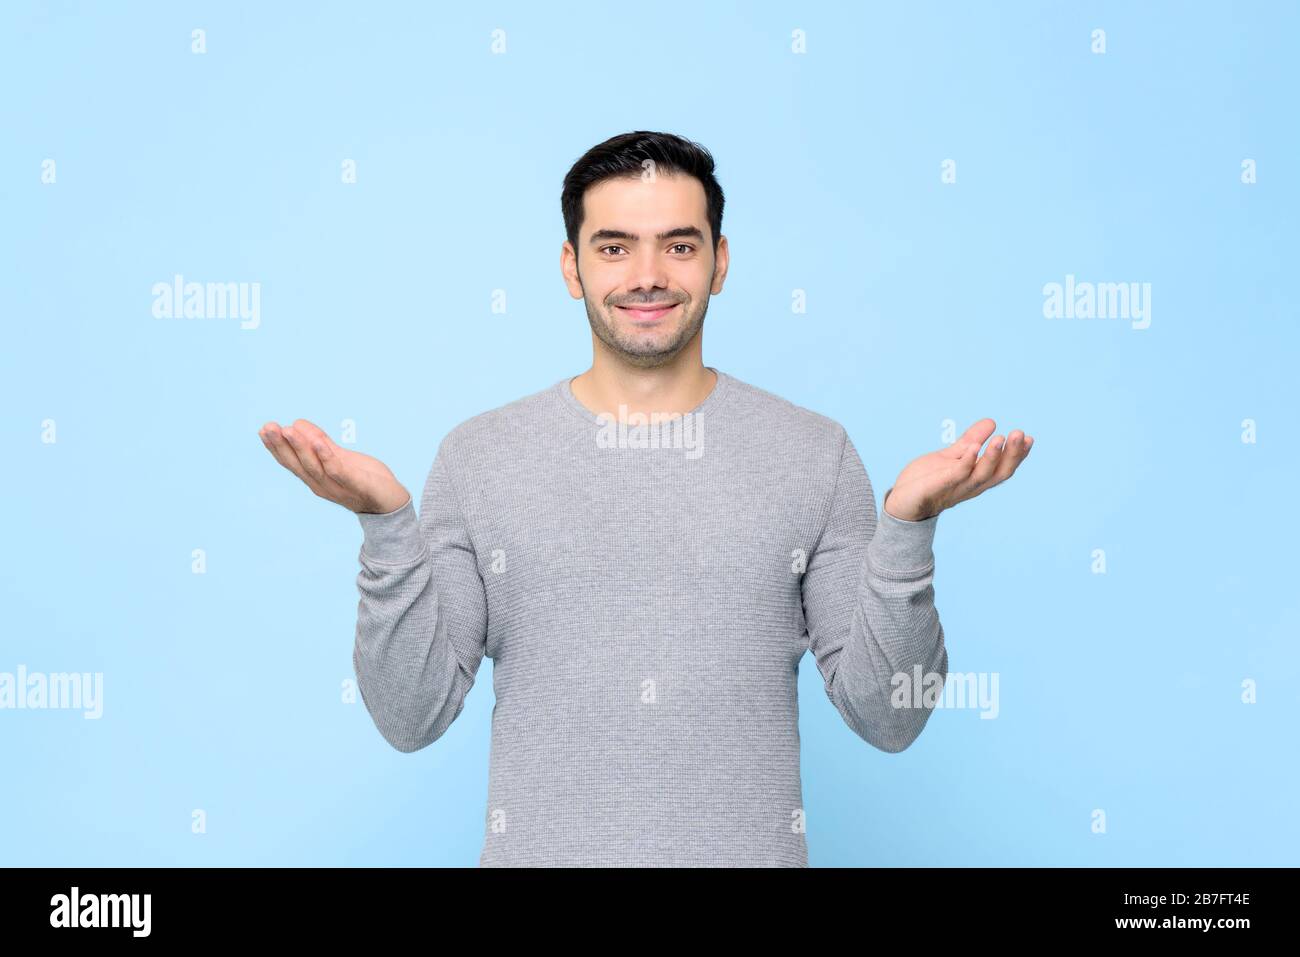 Ritratto a metà corpo di uomo sorridente in t-shirt grigia con gesto a mano aperta su sfondo blu chiaro dello studio Foto Stock